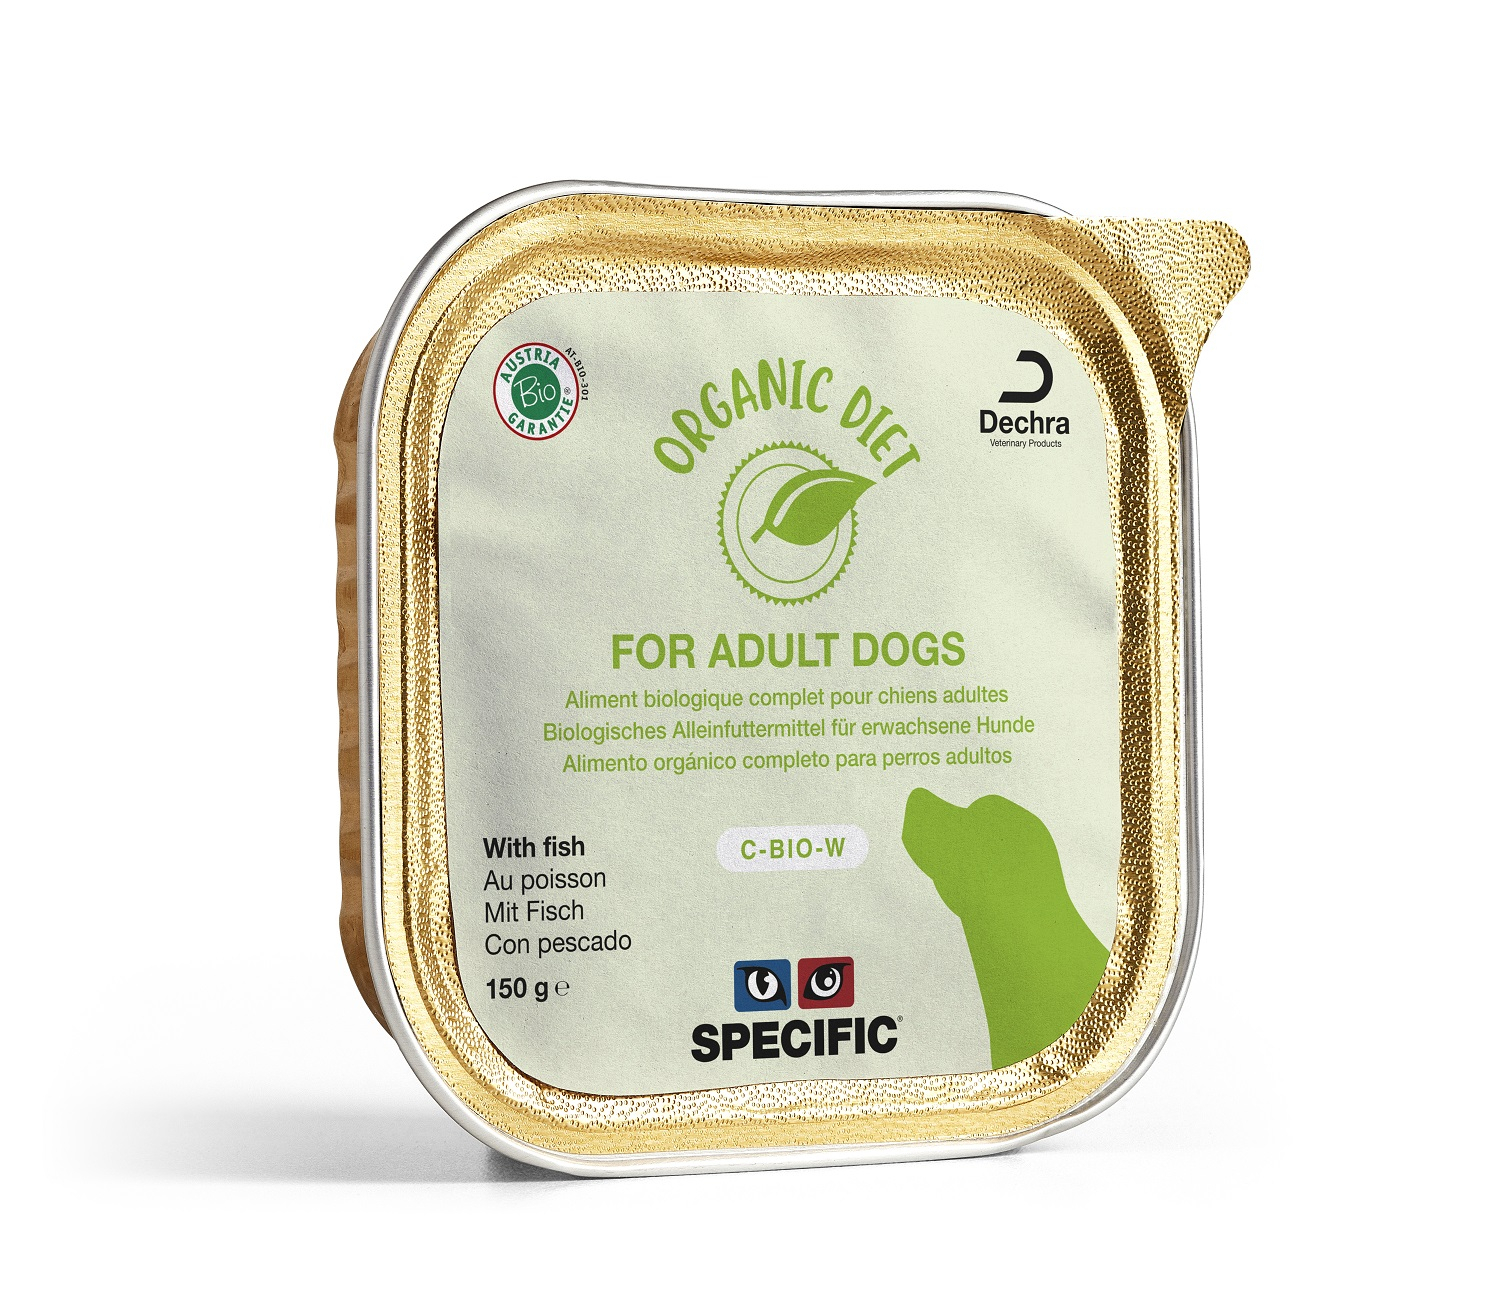 SPECIFIC C-BIO-W Organic Pack de 5 patés bio para perros adultos - varias recetas